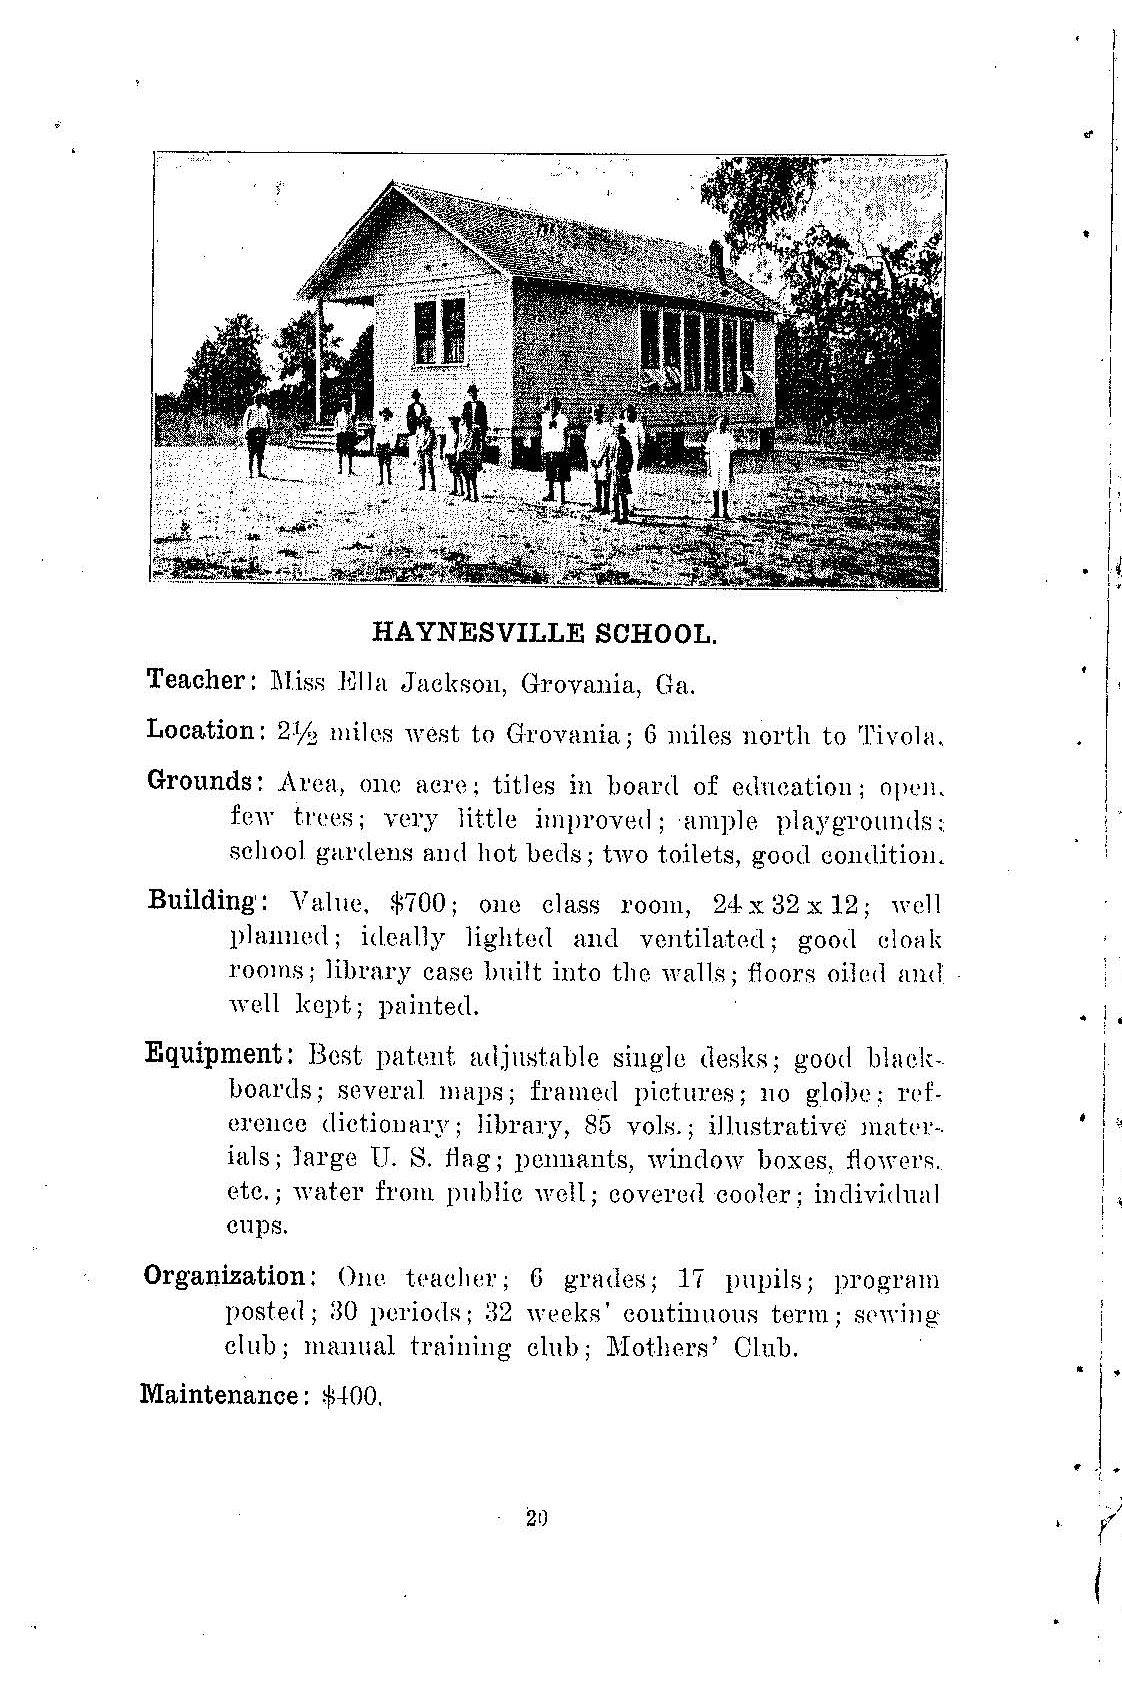 Haynesville School